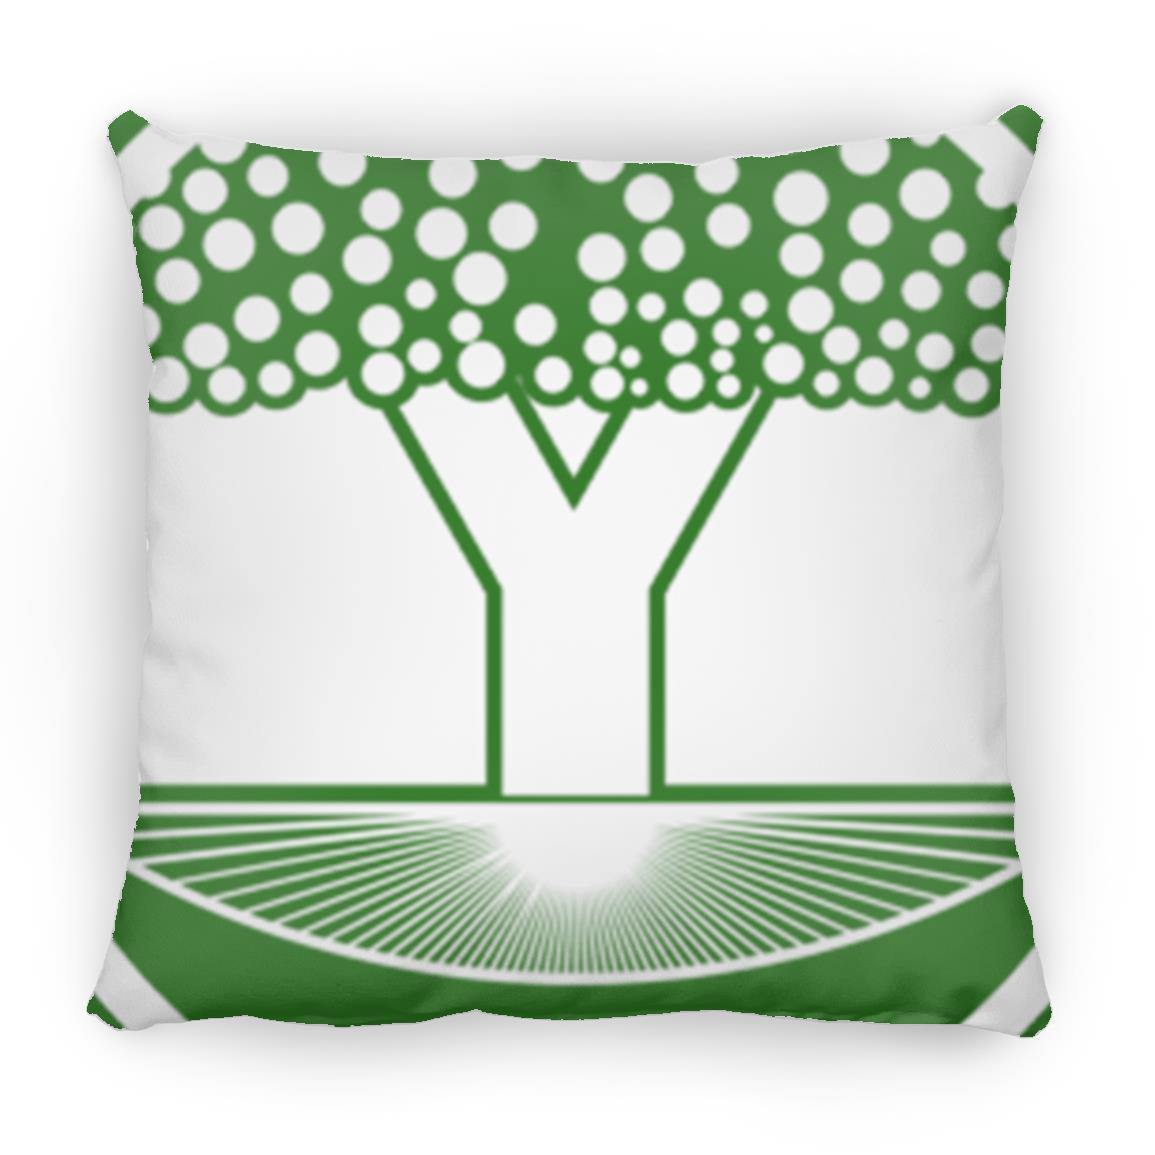 Crop Circle Pillow - Alton Barnes 3 - Shapes of Wisdom